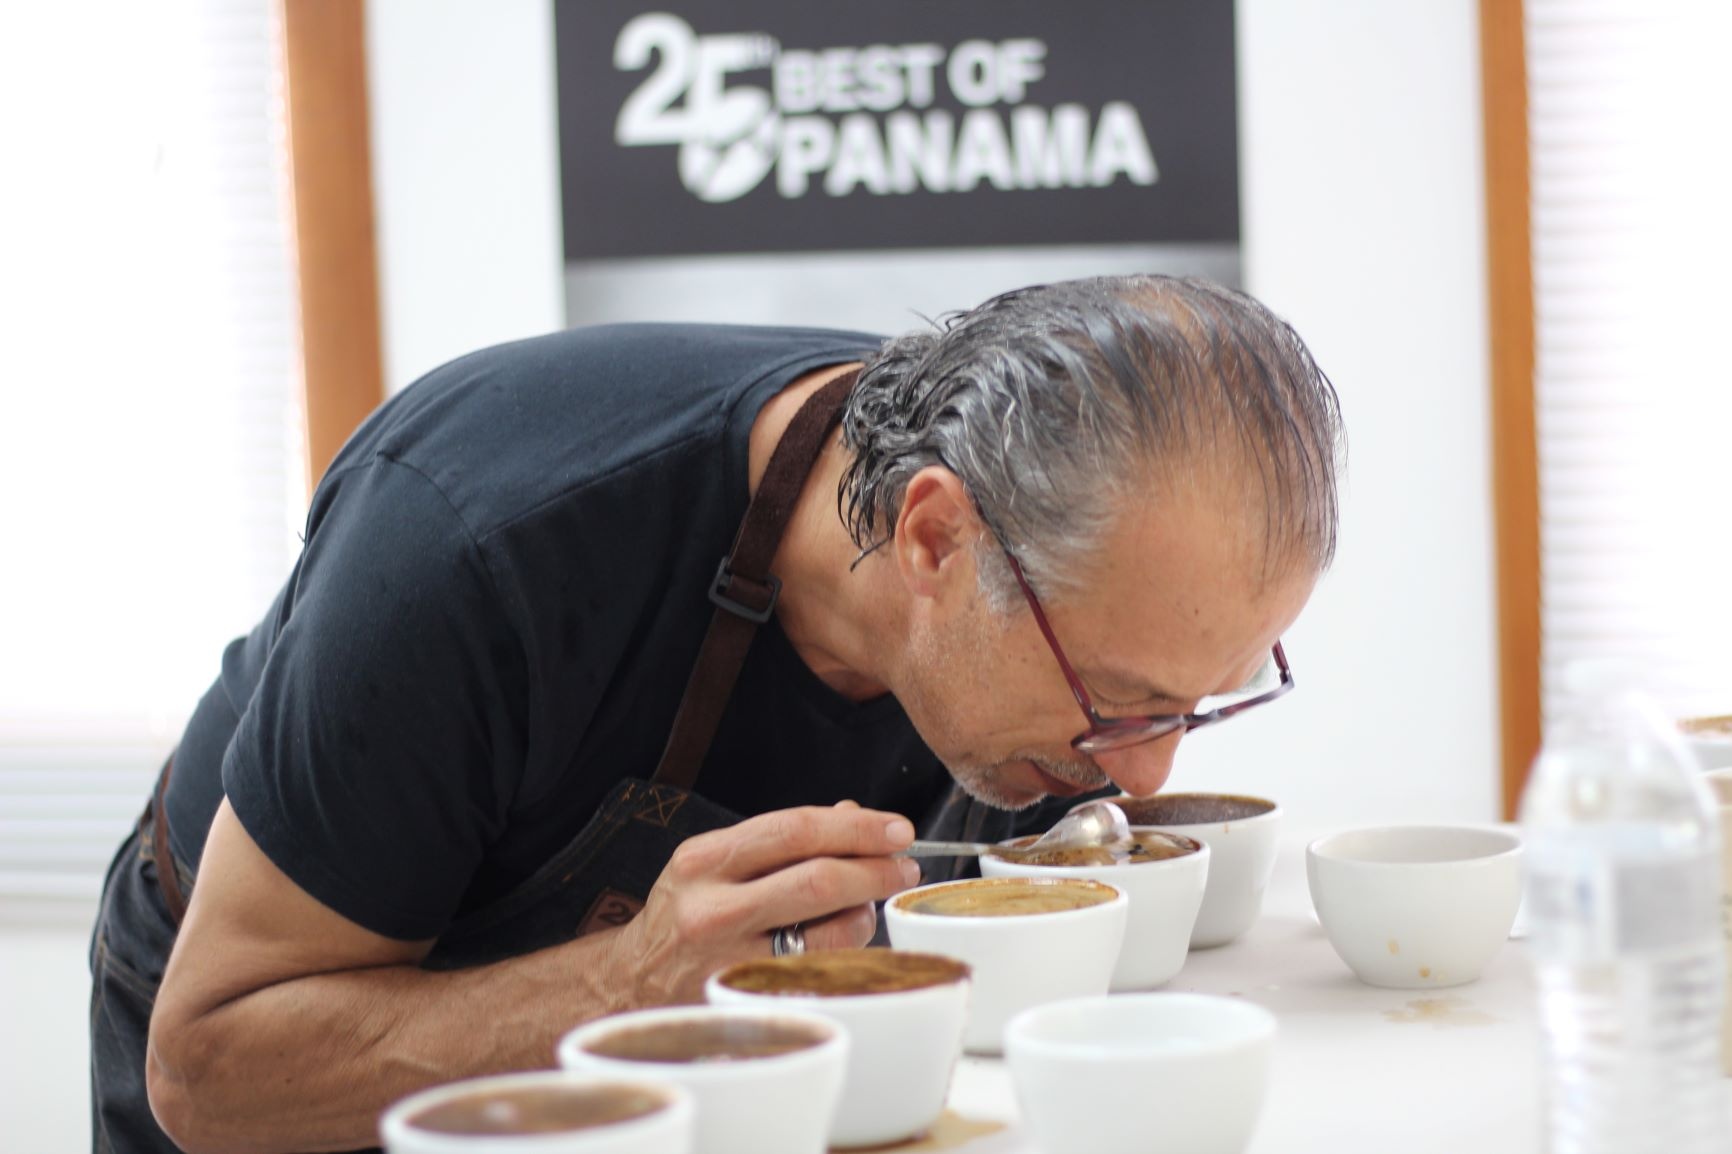 Inició Cata Nacional del Mejor Café de Panamá